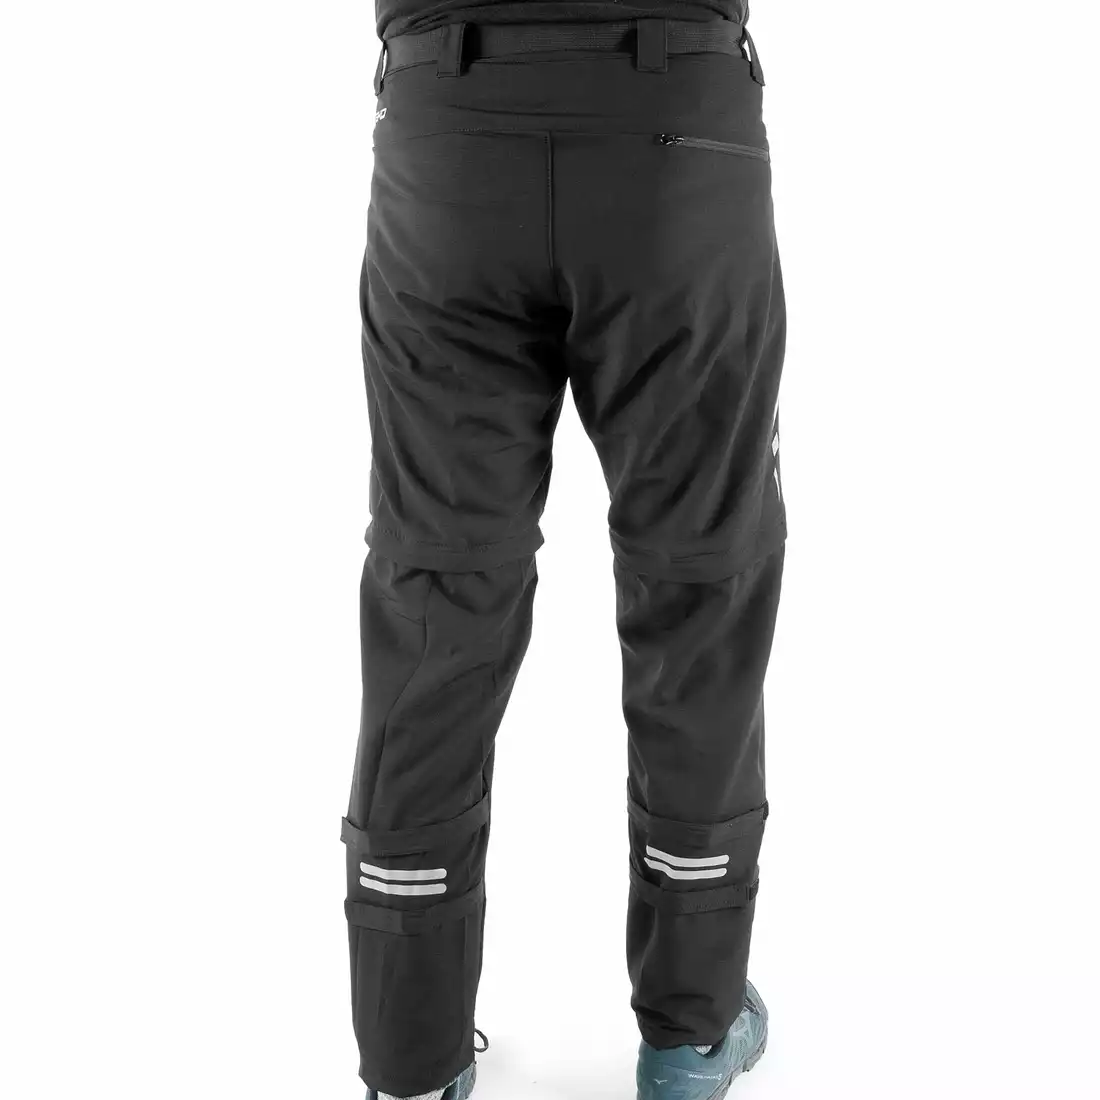 DEKO STR-M-001 męskie spodnie rowerowe z odpinanymi nogawkami, czarne